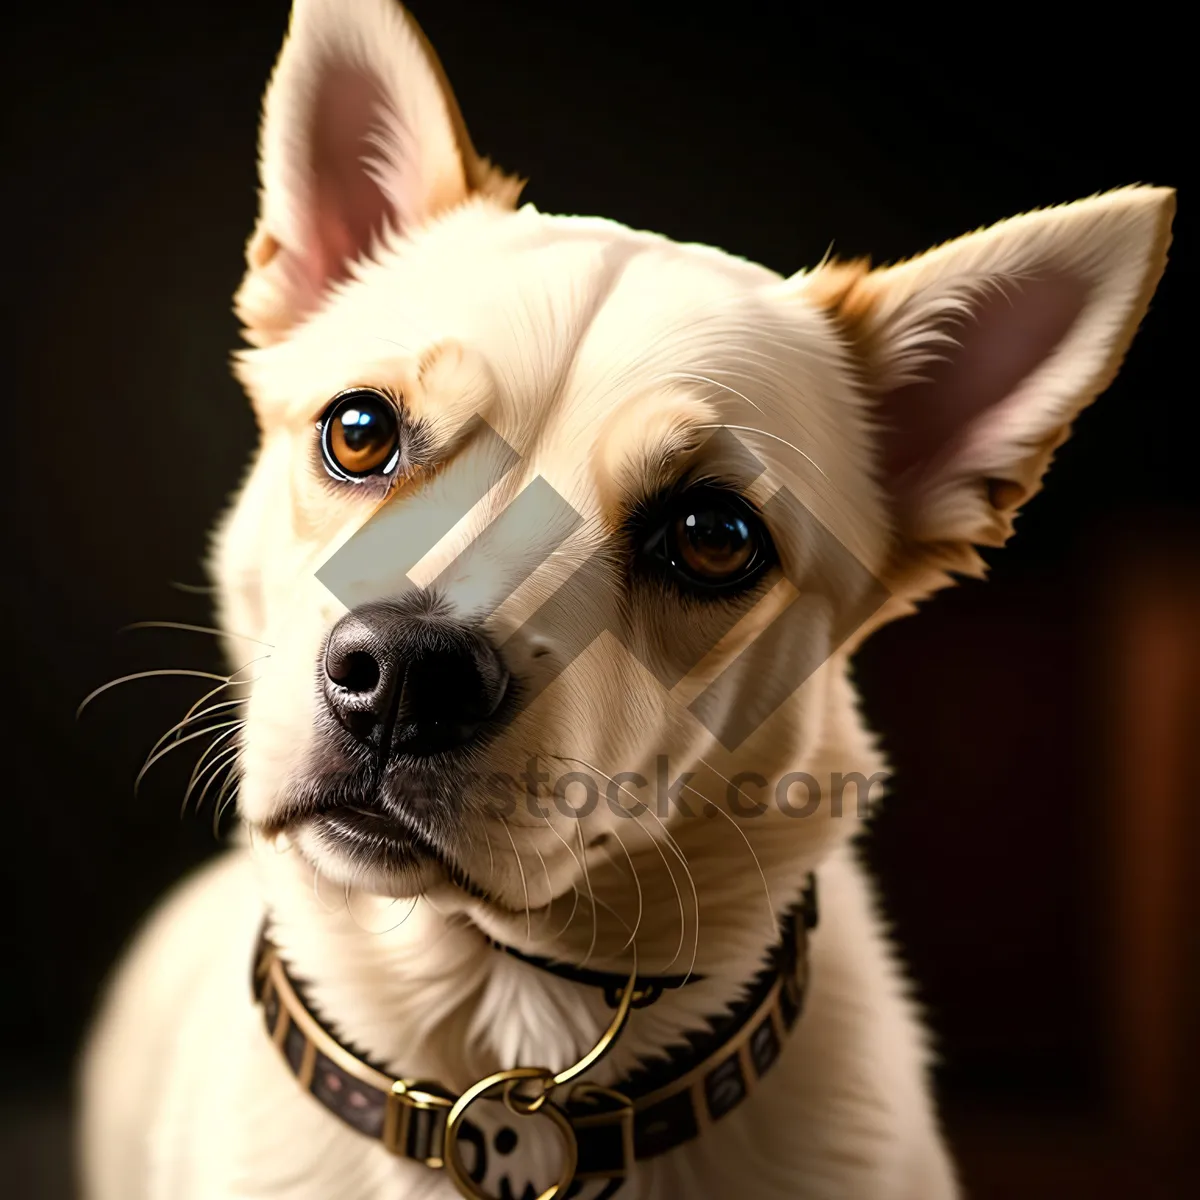 Picture of Purebred Bulldog Puppy Poses for Studio Portrait